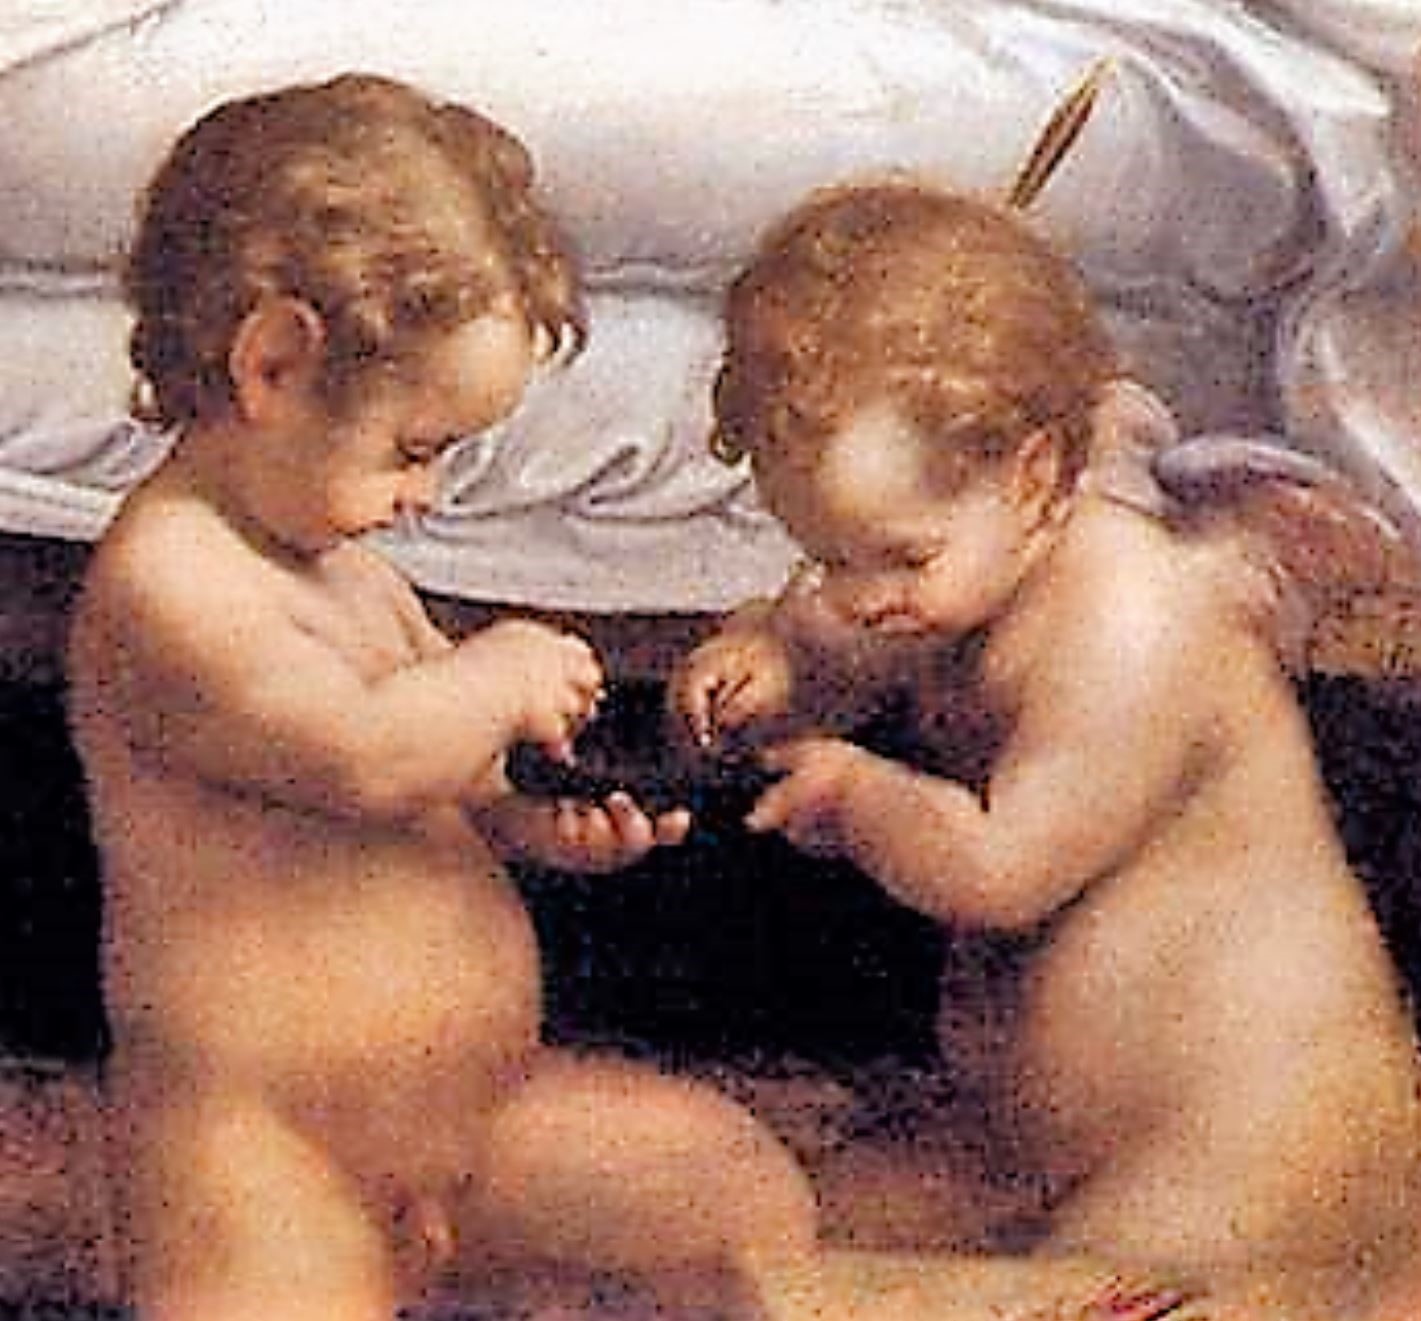 correge 1530 ca danae Galleria Borghese 158 x 189 cm amours